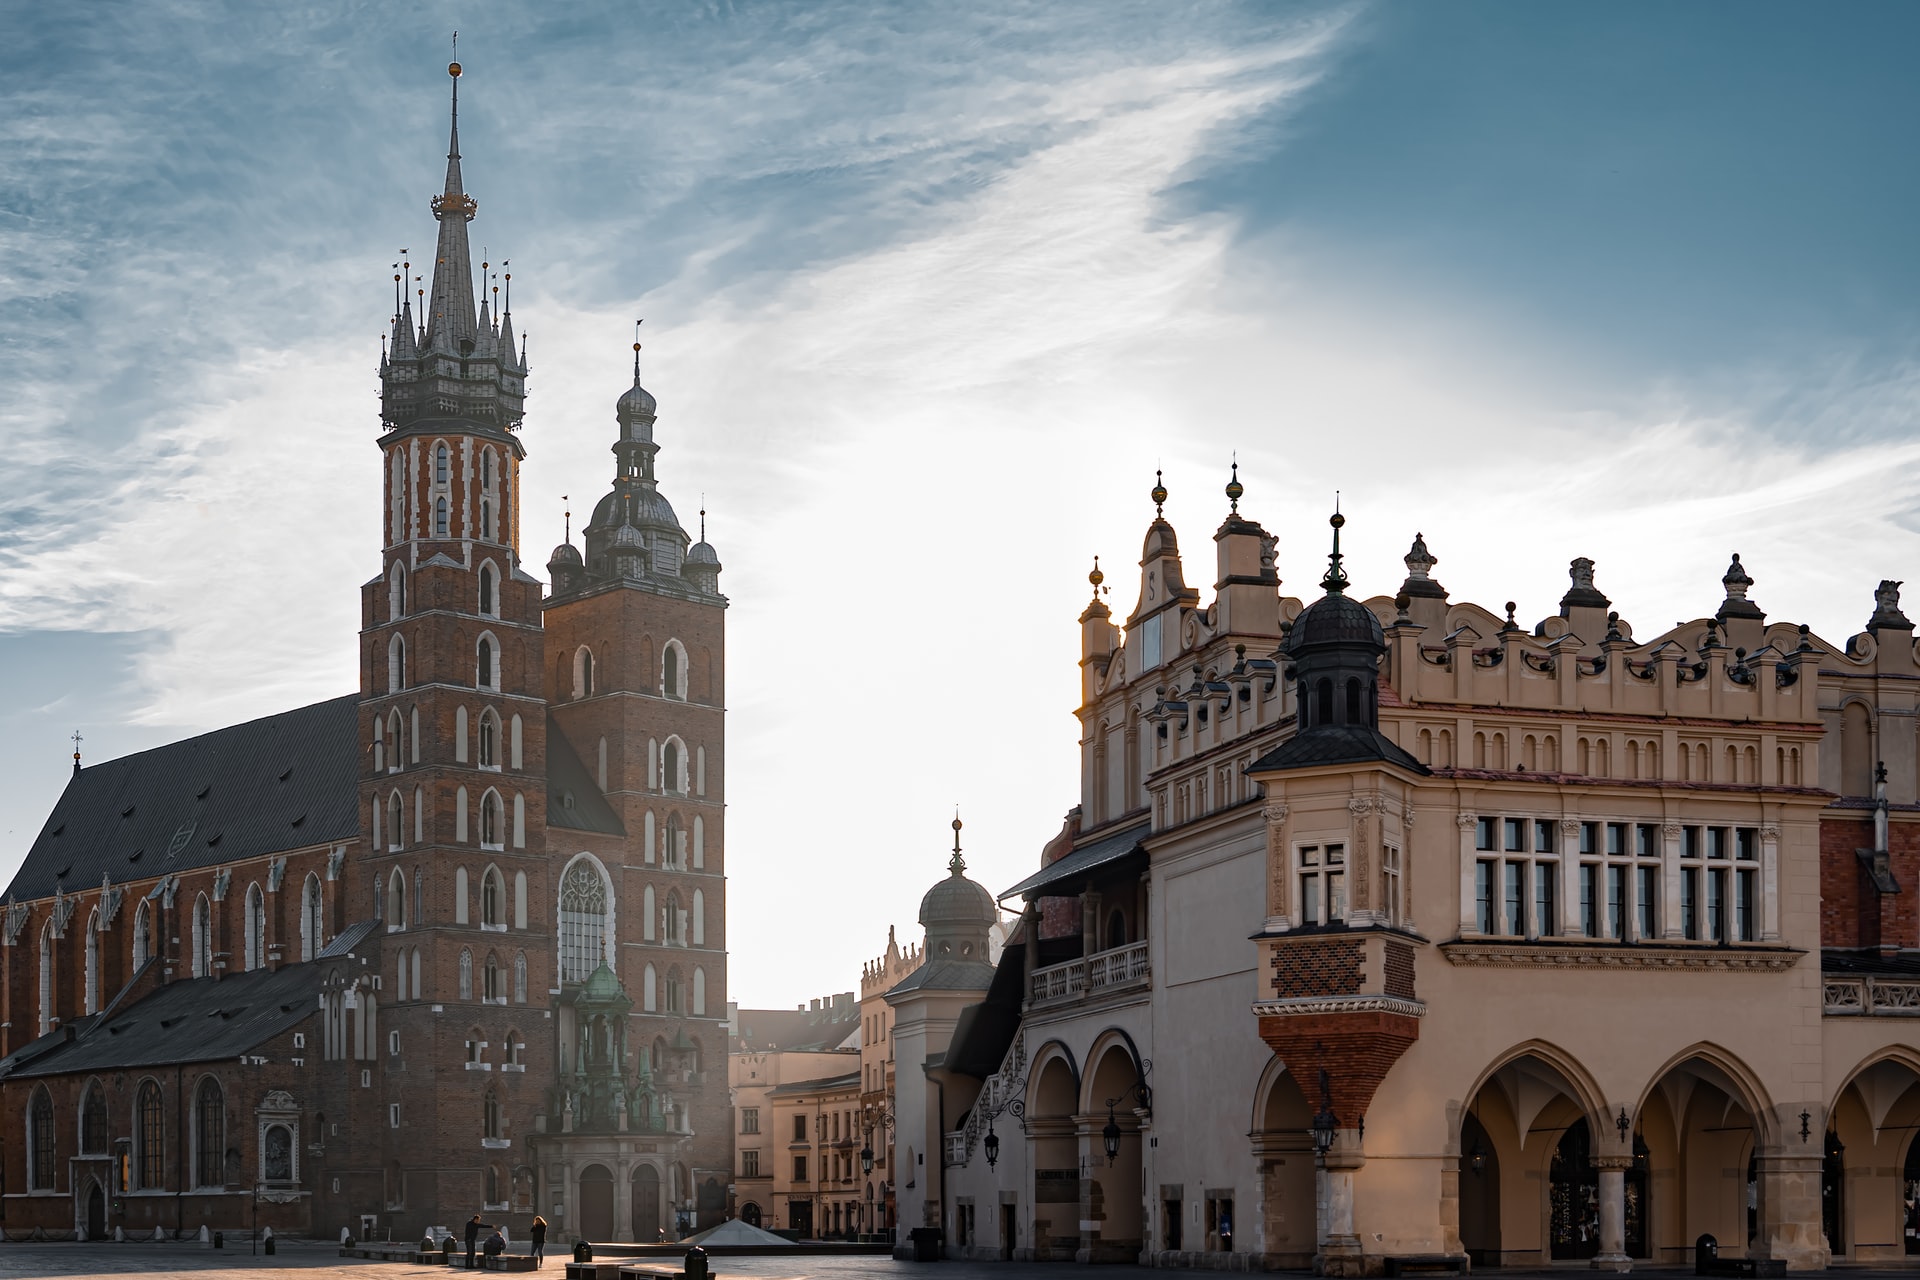 Algumas das construções renascentistas e góticas mais bem preservadas da Europa estão na Cracóvia, antiga capital do país